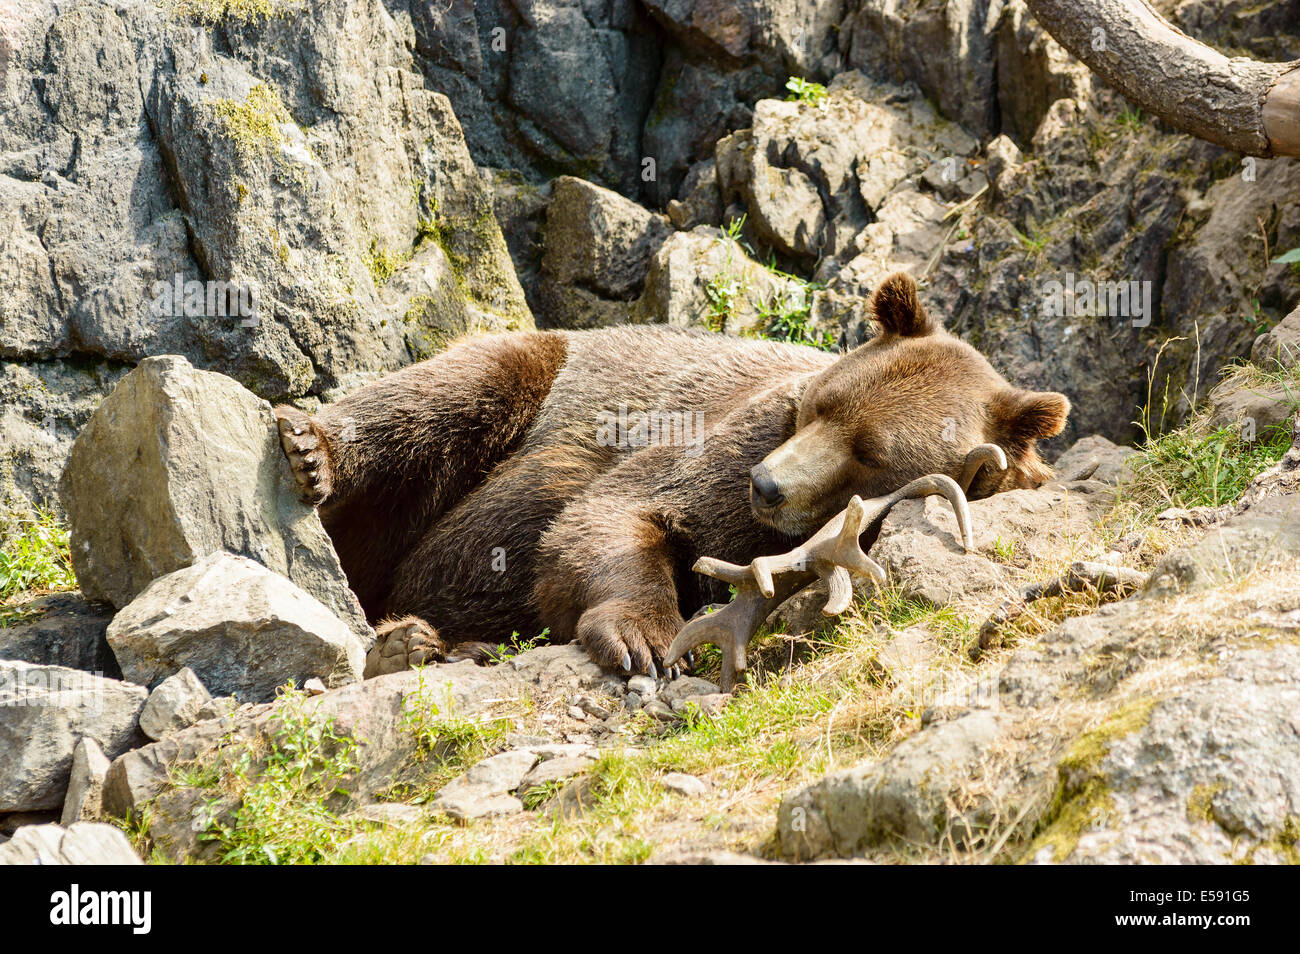 Ursus arctos, ou l'ours brun. Ici repose sur les bois d'orignaux en terrain rocheux. Banque D'Images